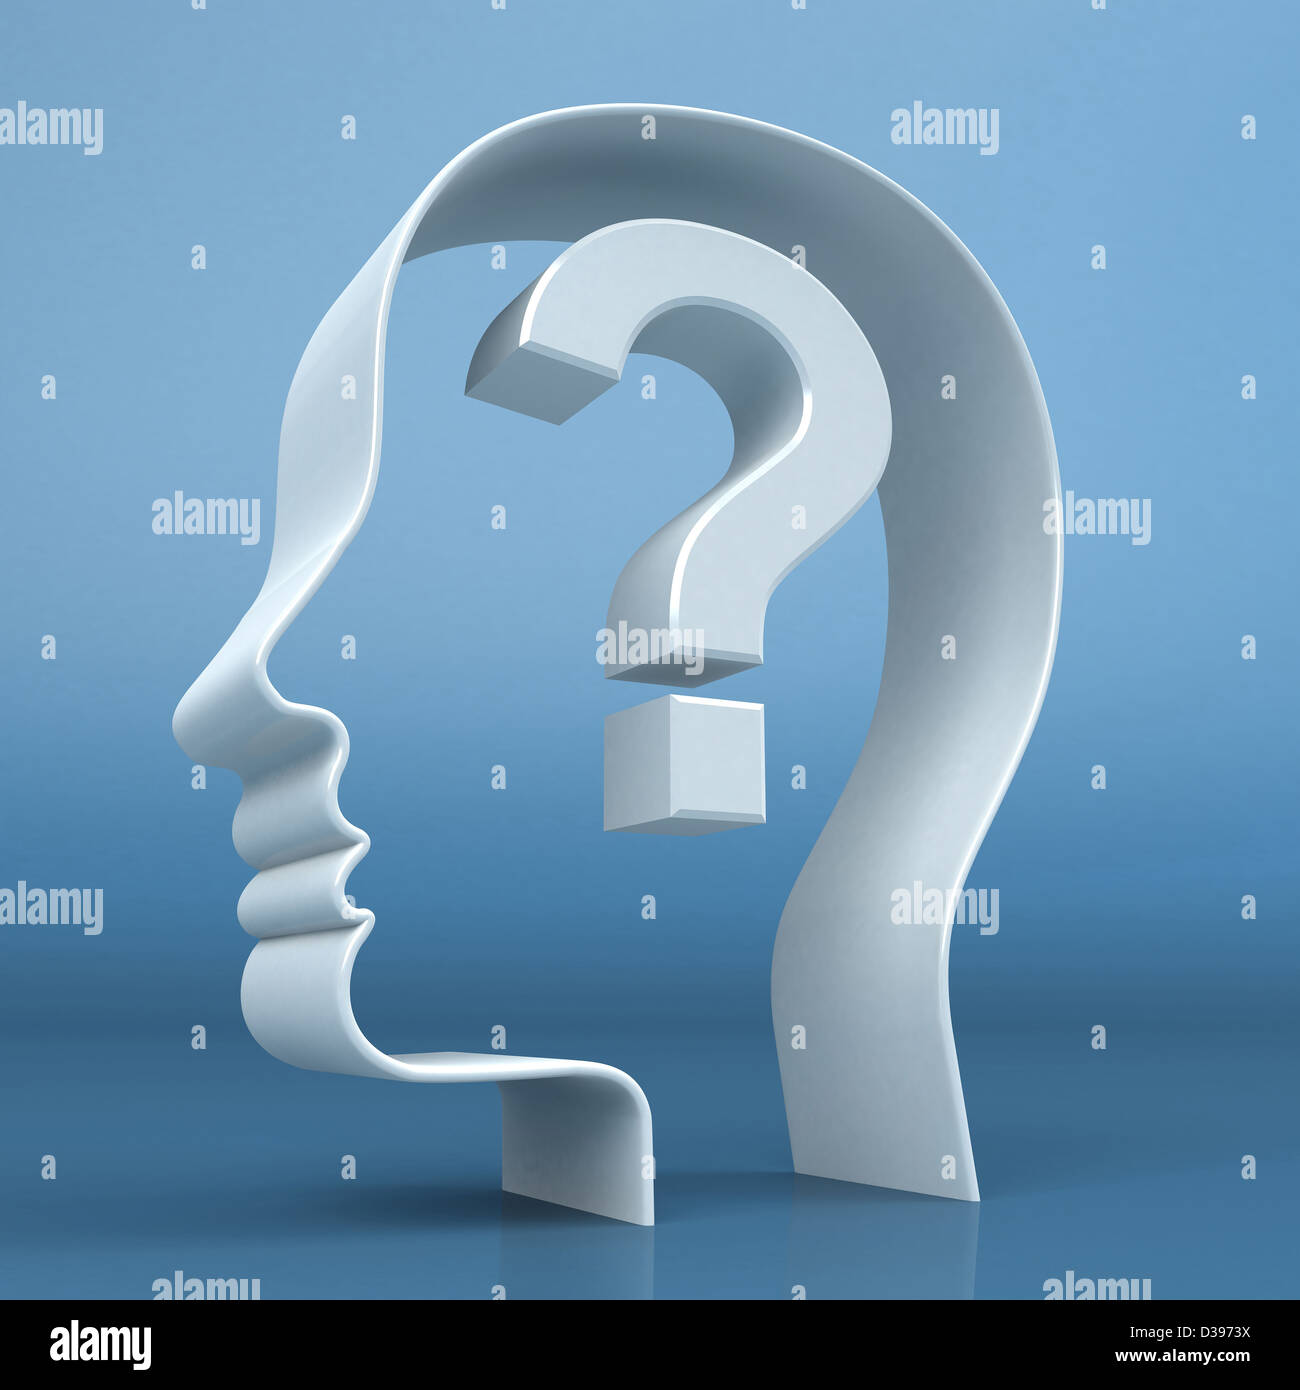 Coup de tête humaine conceptuelle avec point d'interrogation illustrant la confusion Banque D'Images